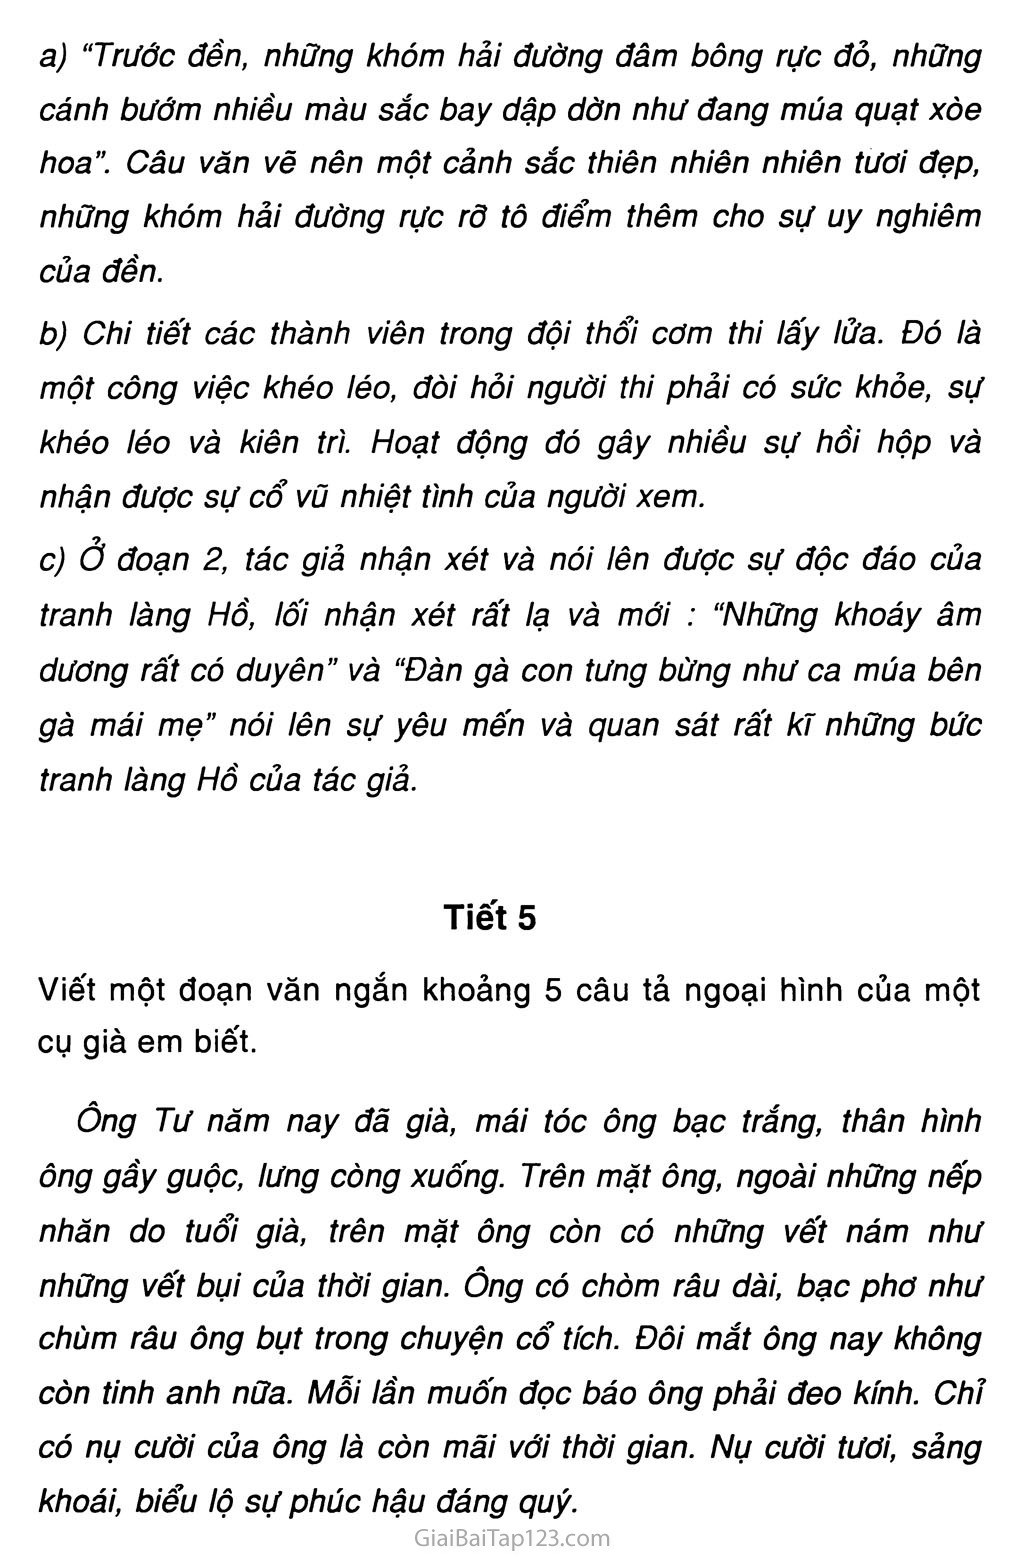 Giải vở bài tập Tiếng Việt lớp 5 tập 2 Tuần 28